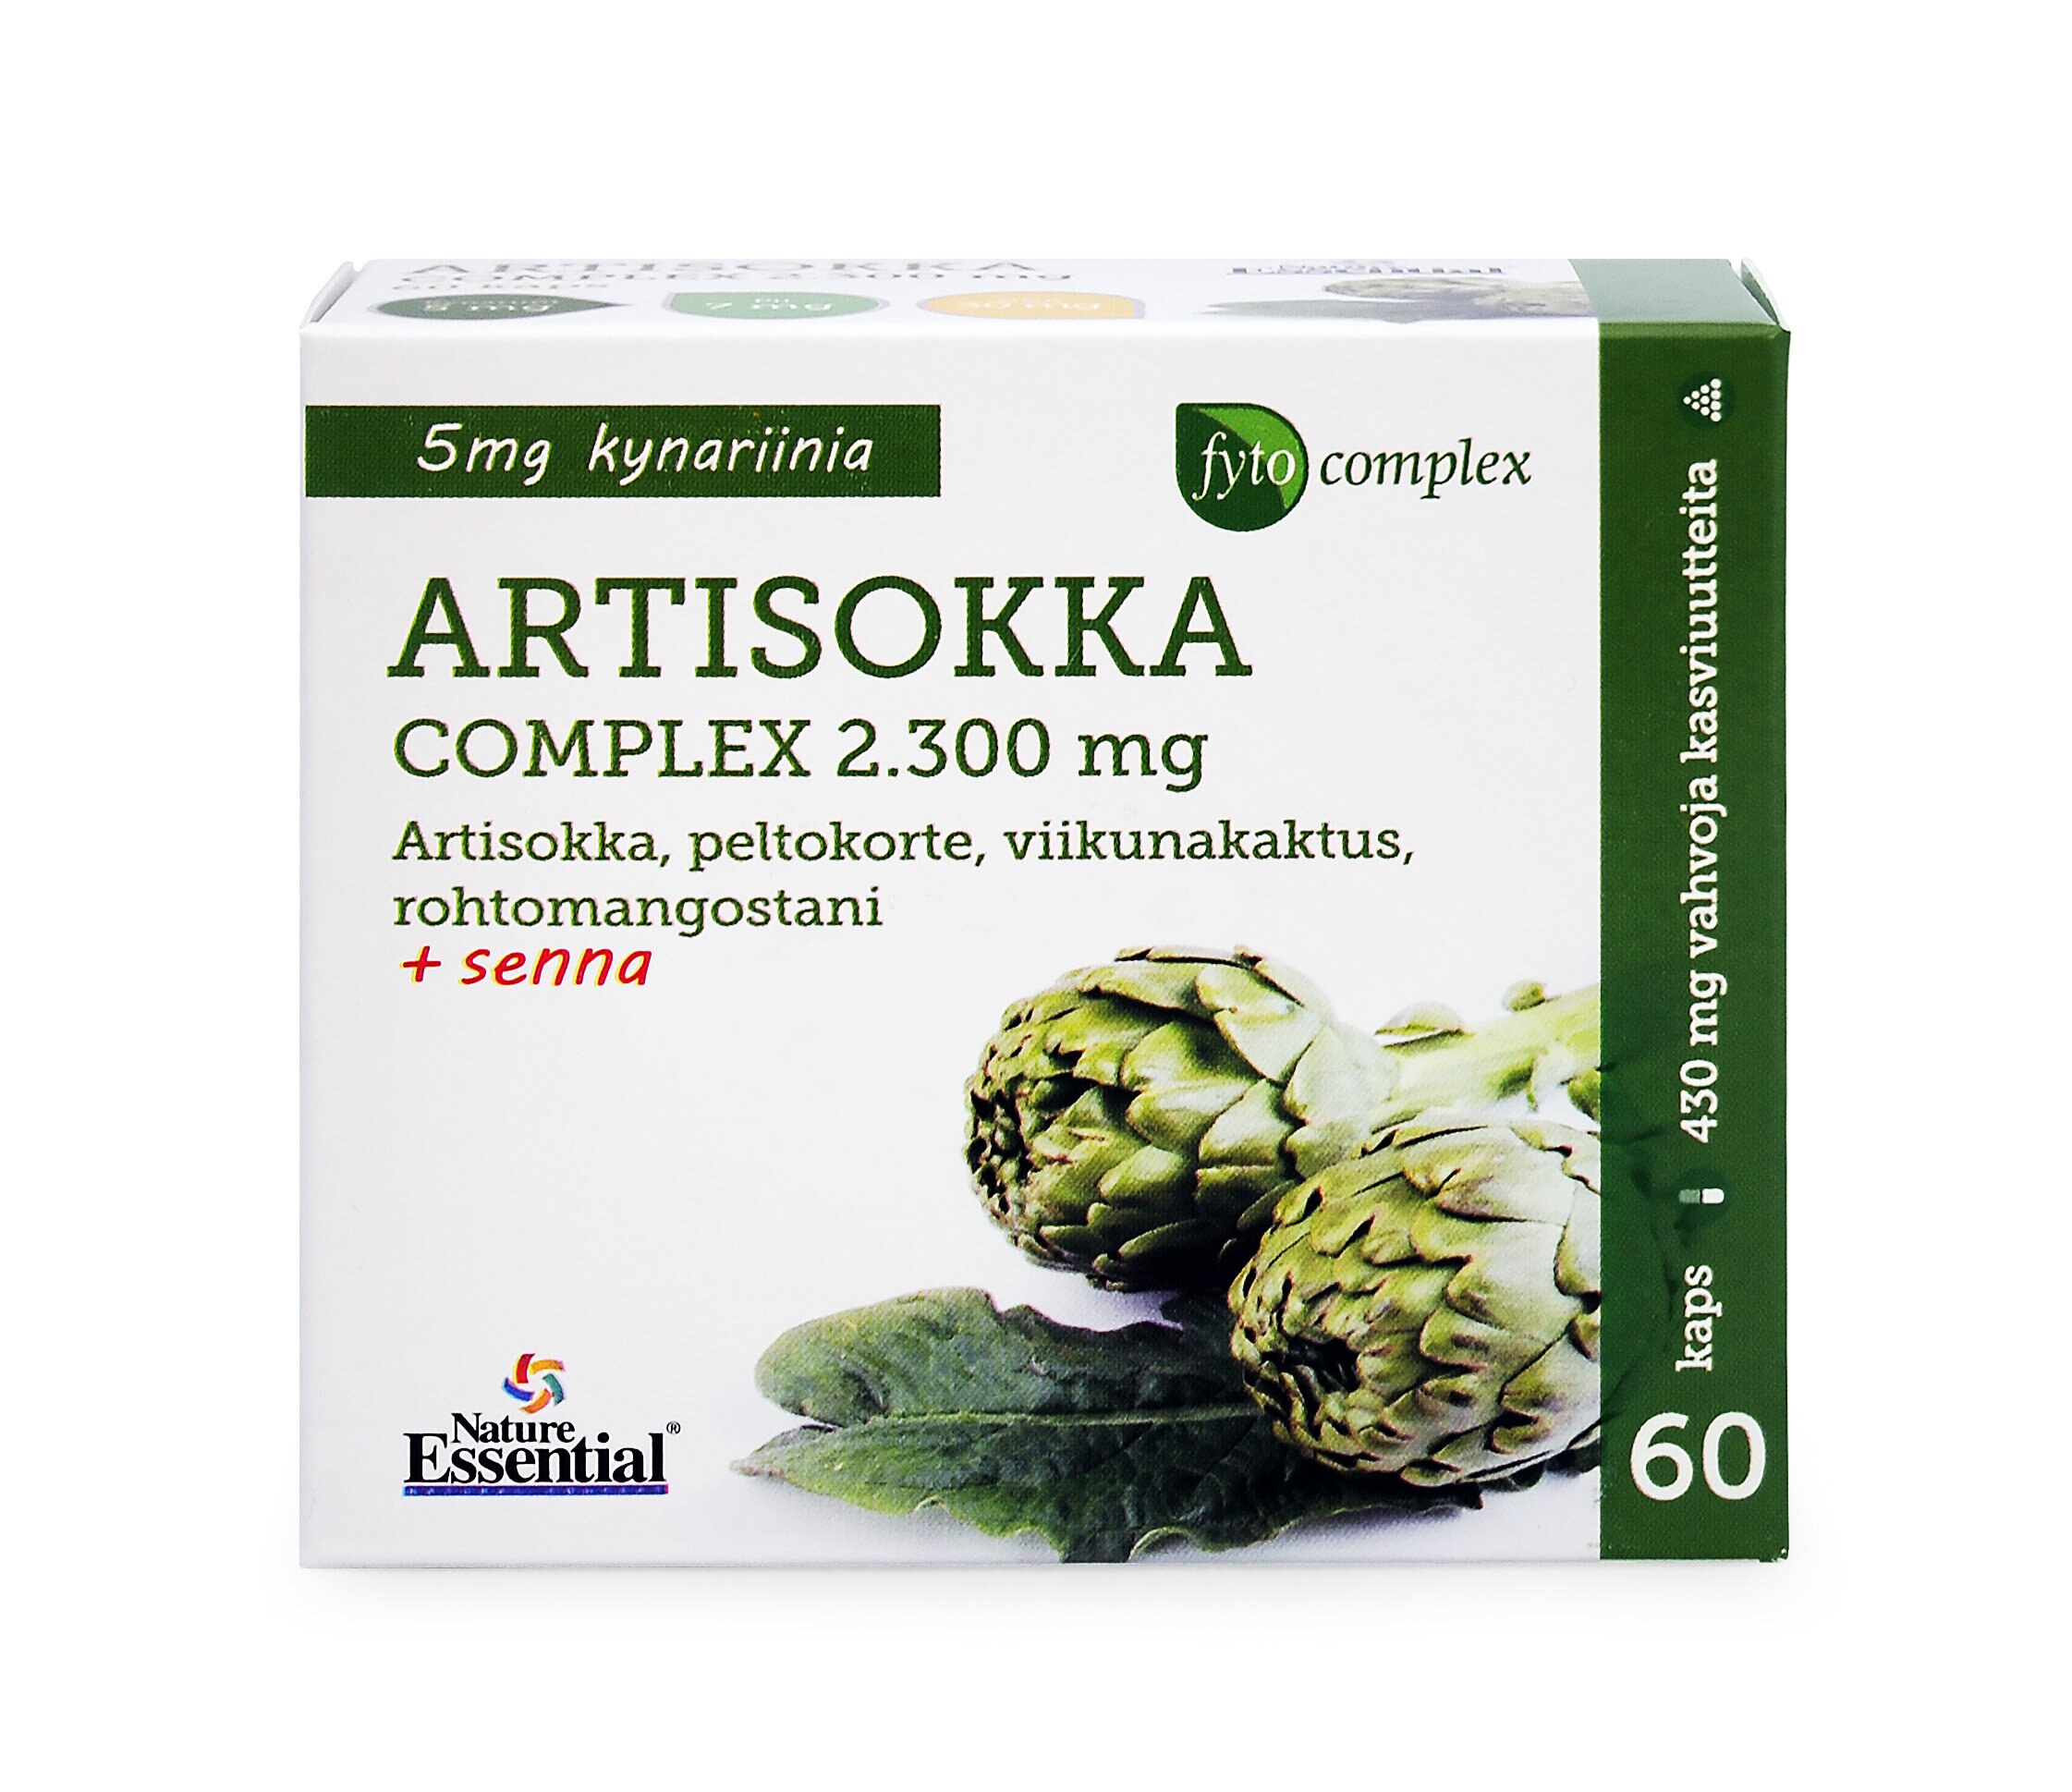 Fytocomplex Artisokka Comp 2300 mg